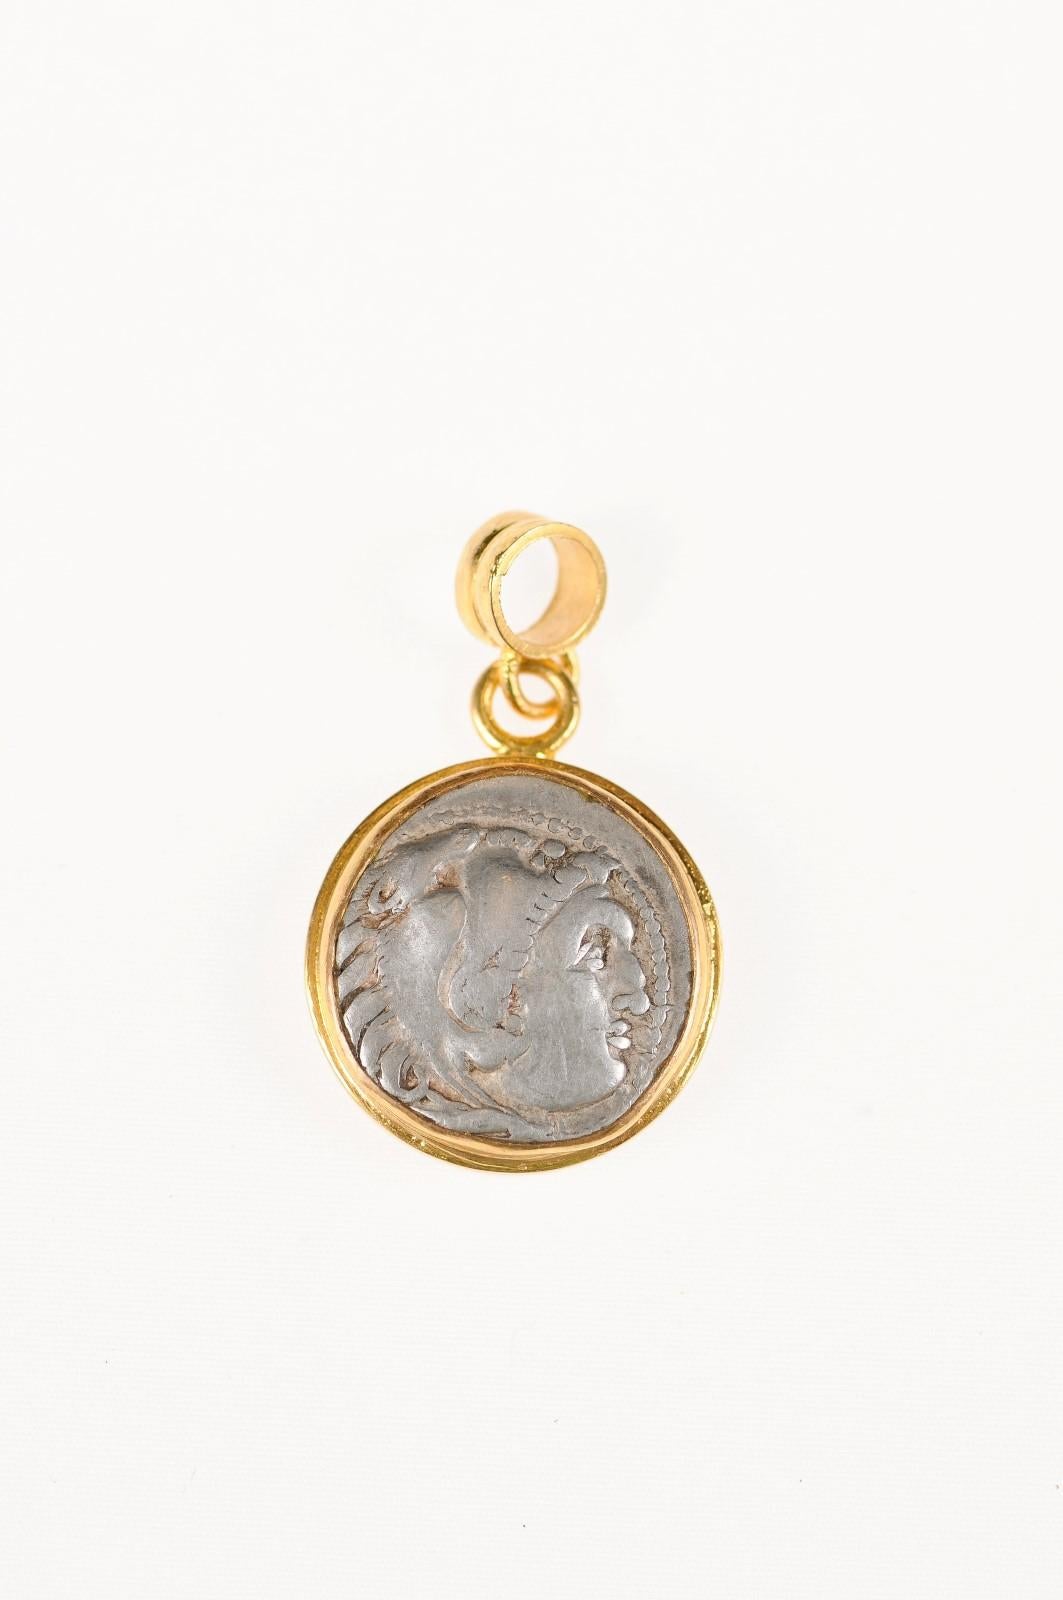 Eine authentische griechische, Alexander der Große, AR Drachme Münze (ca. 3. Jahrhundert v. Chr.), in einem runden 22k Gold Lünette mit 22k Gold Bügel gesetzt. Die Vorderseite dieser Münze zeigt den Kopf des Herakles, der einen Kopfschmuck aus